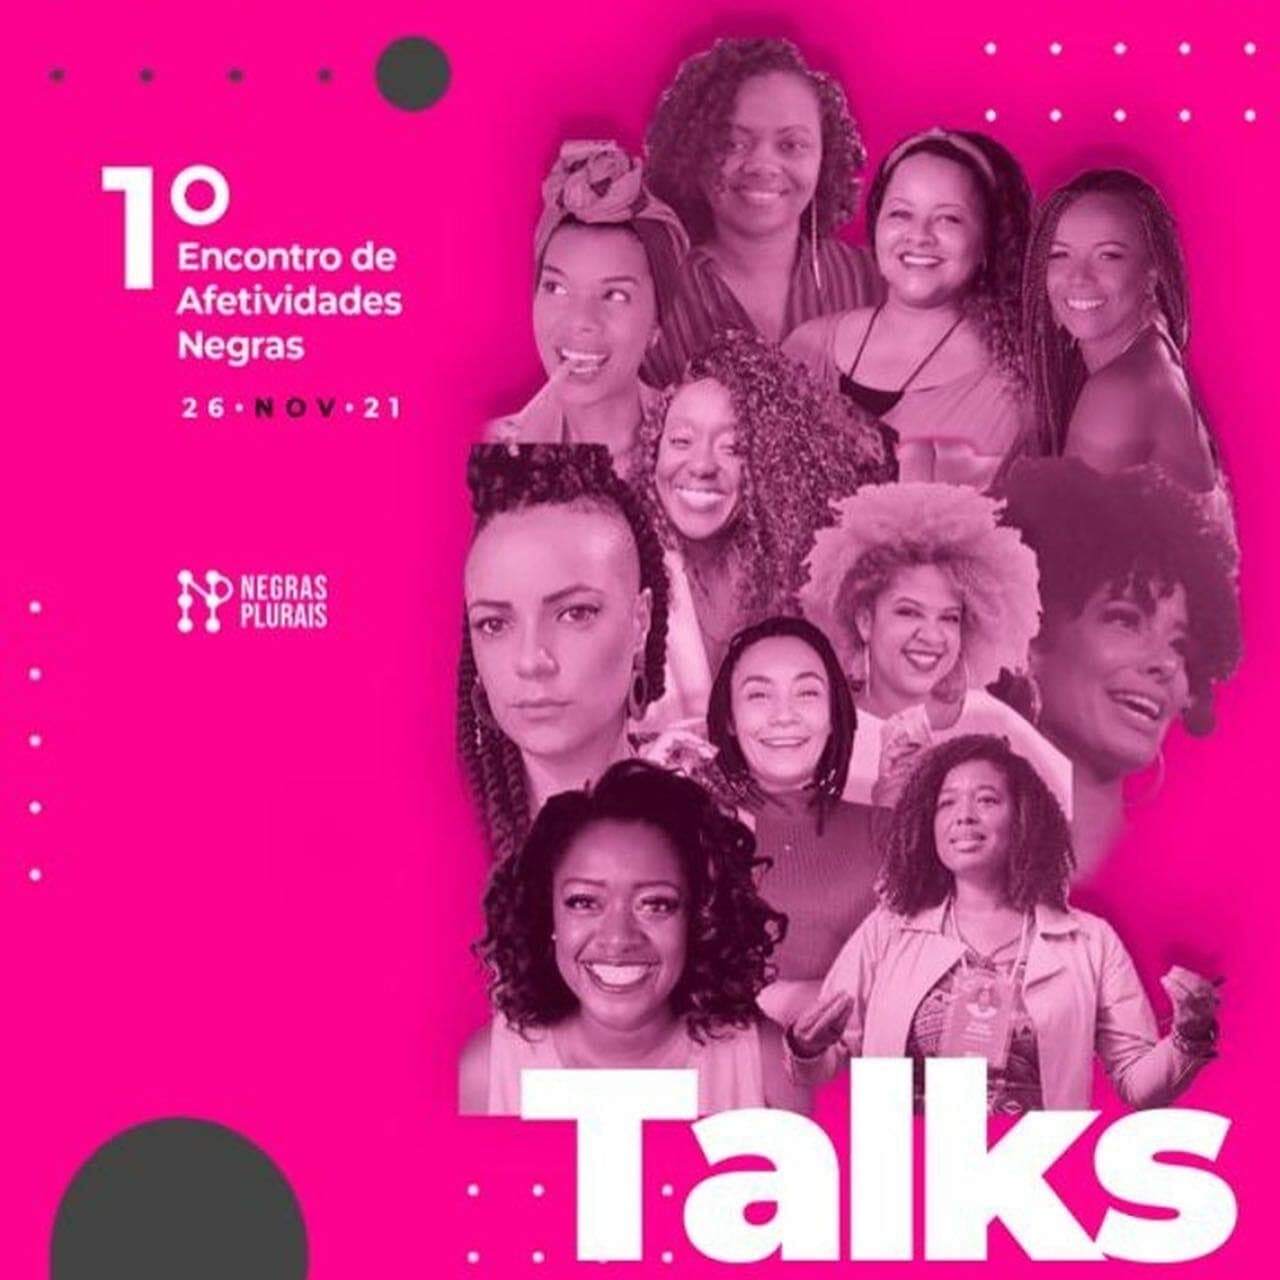 Afetividades Negras reúne 12 horas de conteúdo sobre importância do afeto para mulheres, profissionais e empreendedoras negras em evento online